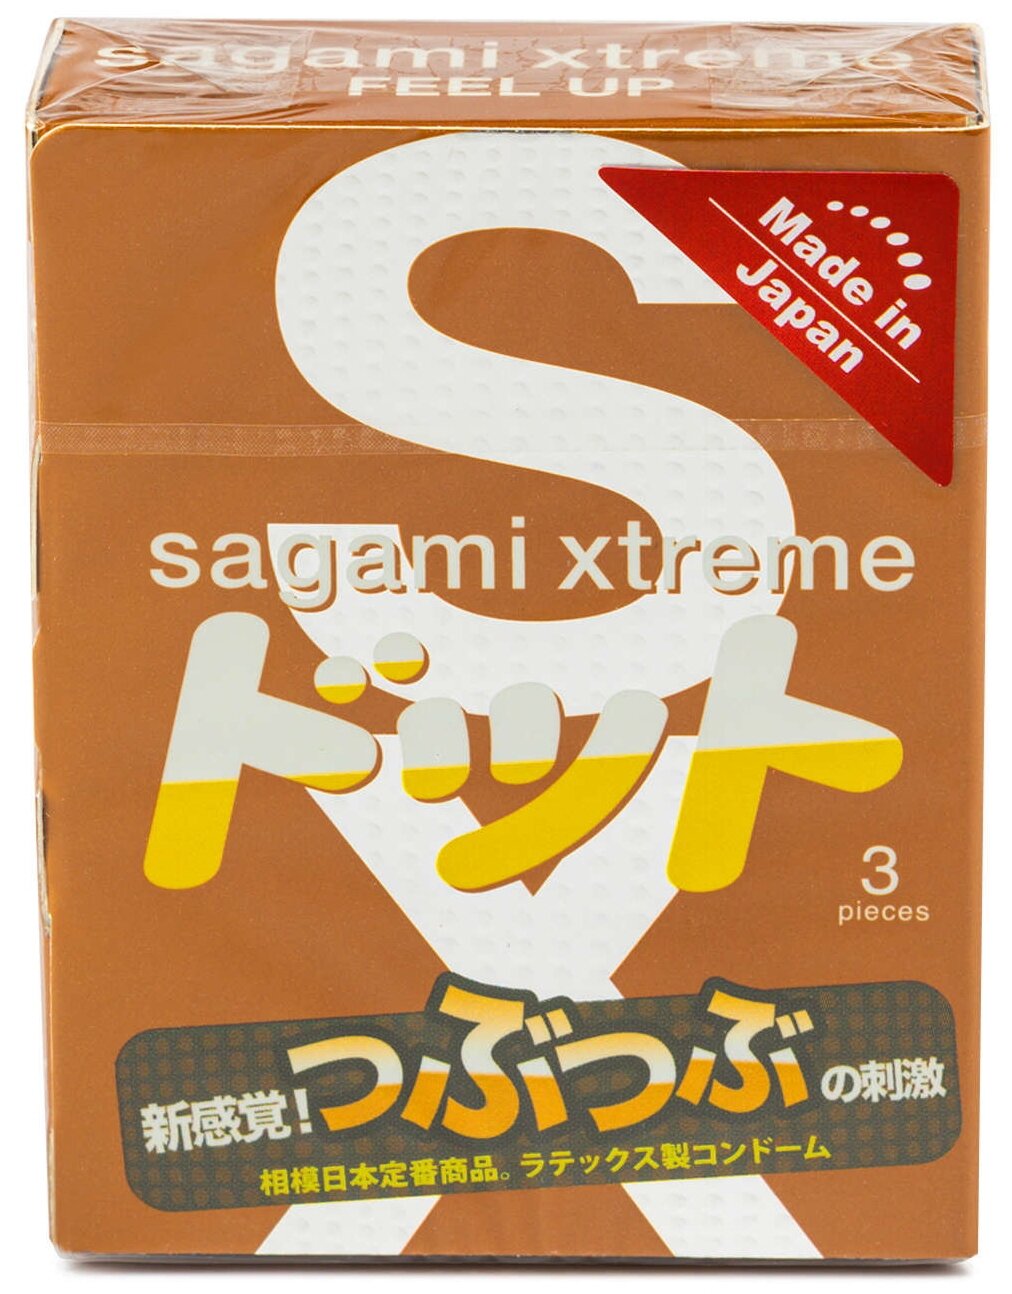 758 Sagami Xtreme Feel Up, 3 шт. Презервативы ультратонкие анатомические. Упаковка по 3 шт.